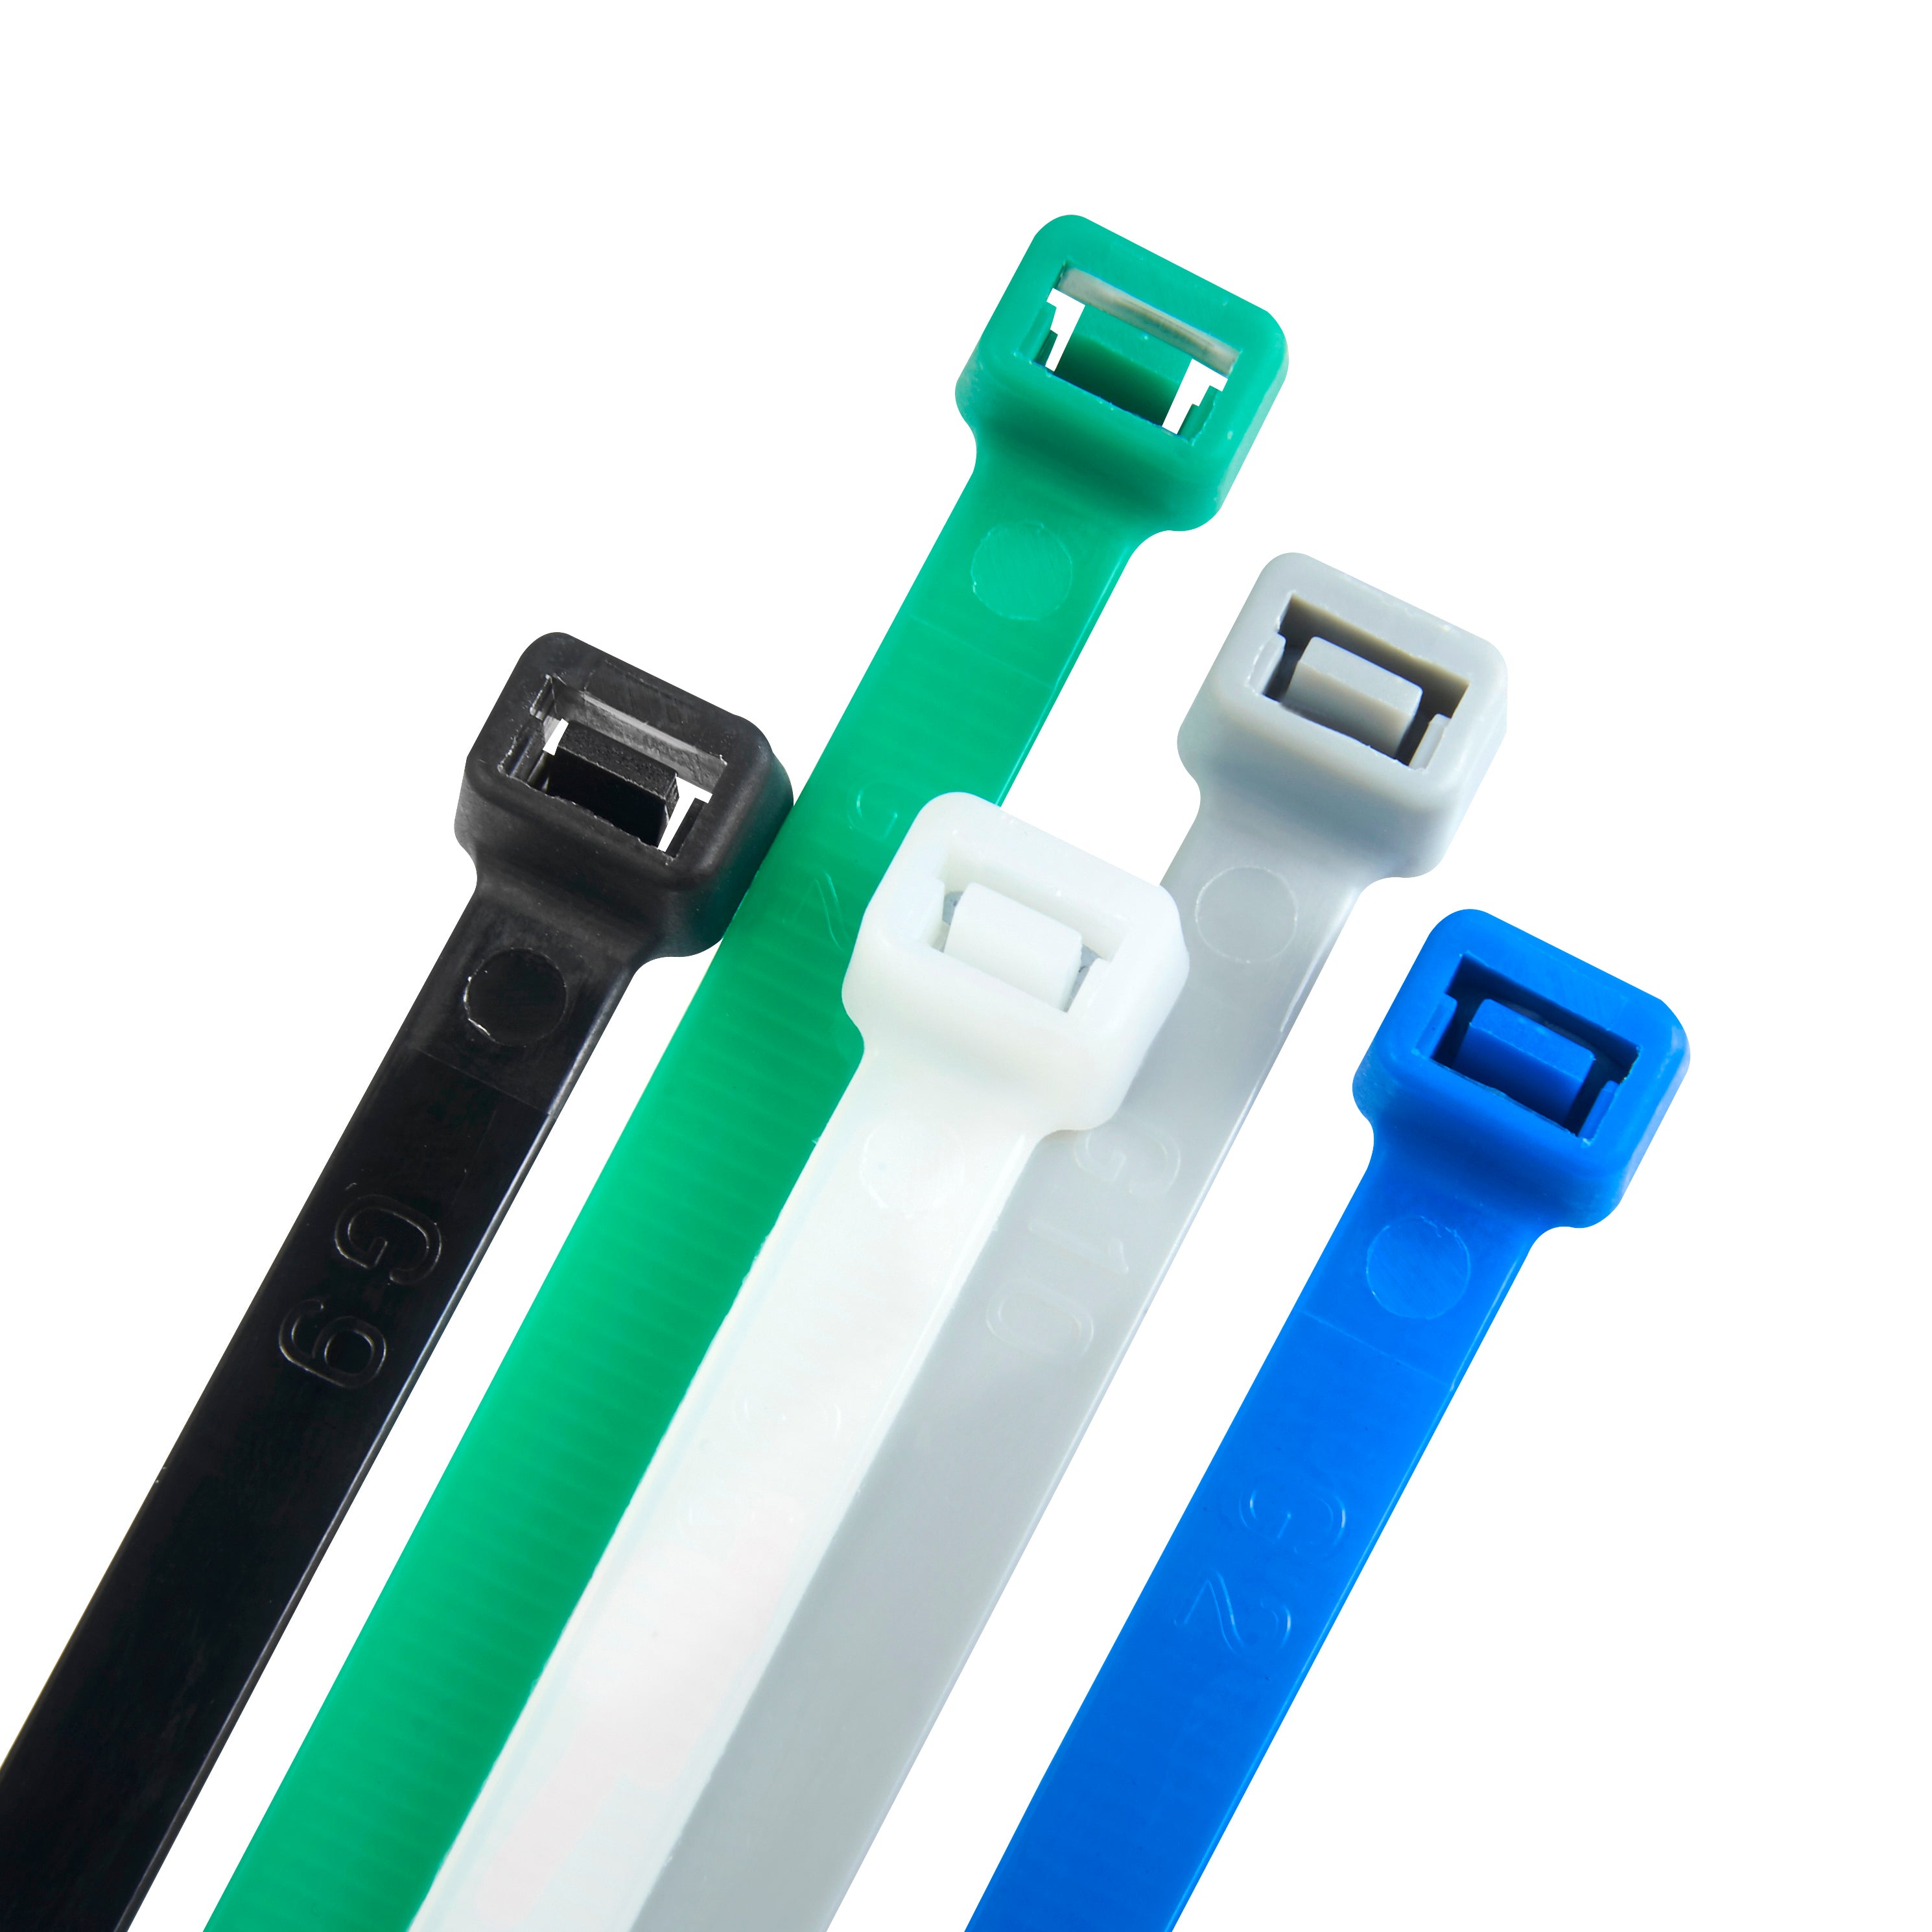 Haus Projekt 200x2.5mm Small Cable Ties, 100pcs Premium Industrial Zip Ties